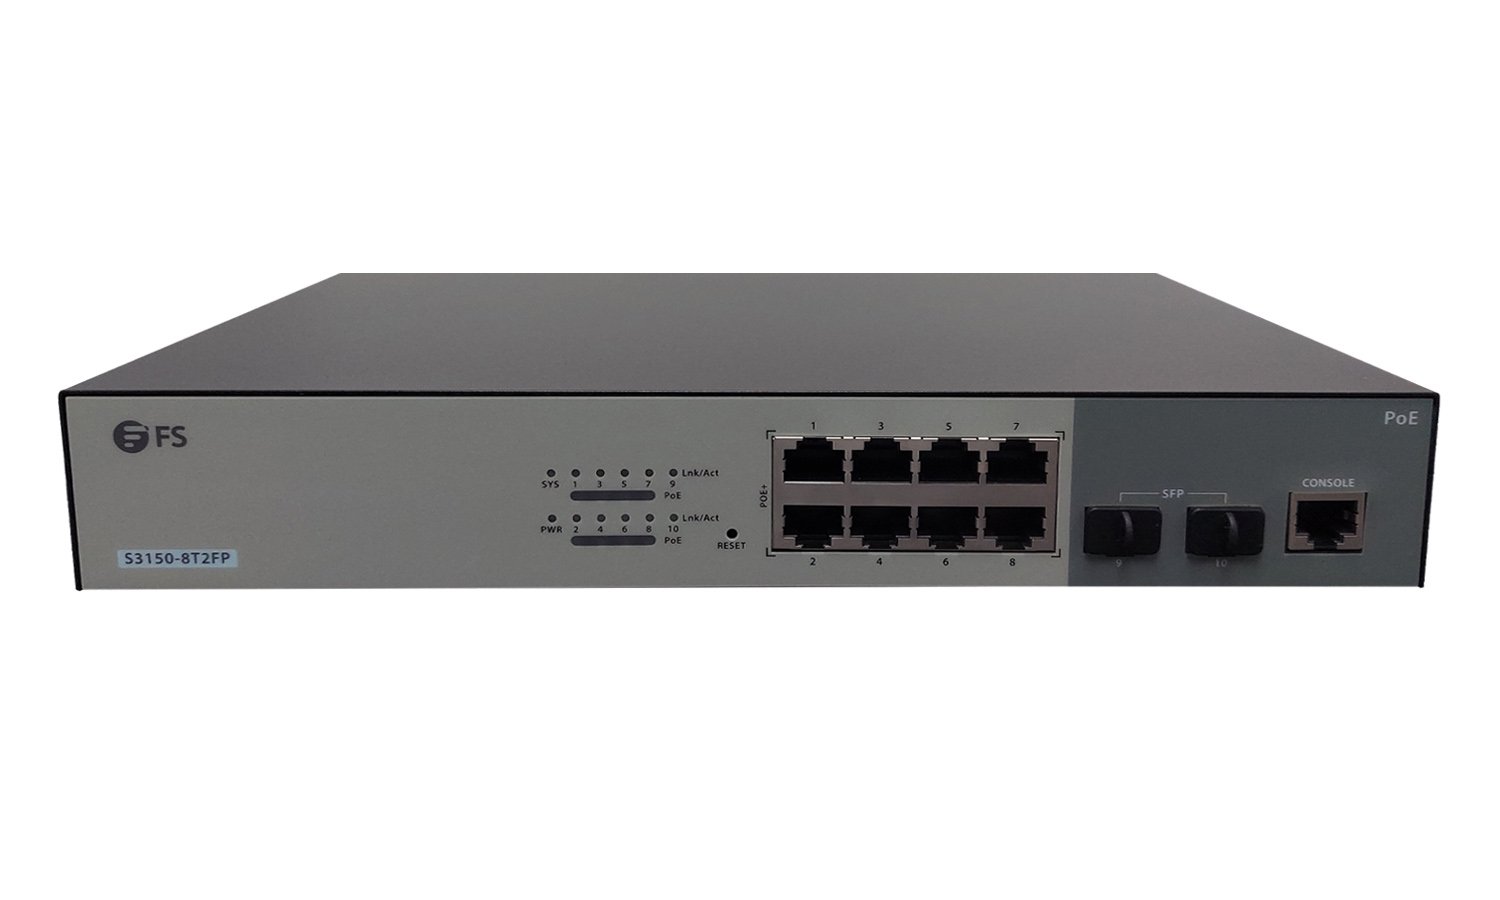 FS 8-Port Gigabit Ethernet PoE+ SOHO Unmanaged Switch -  United  Kingdom